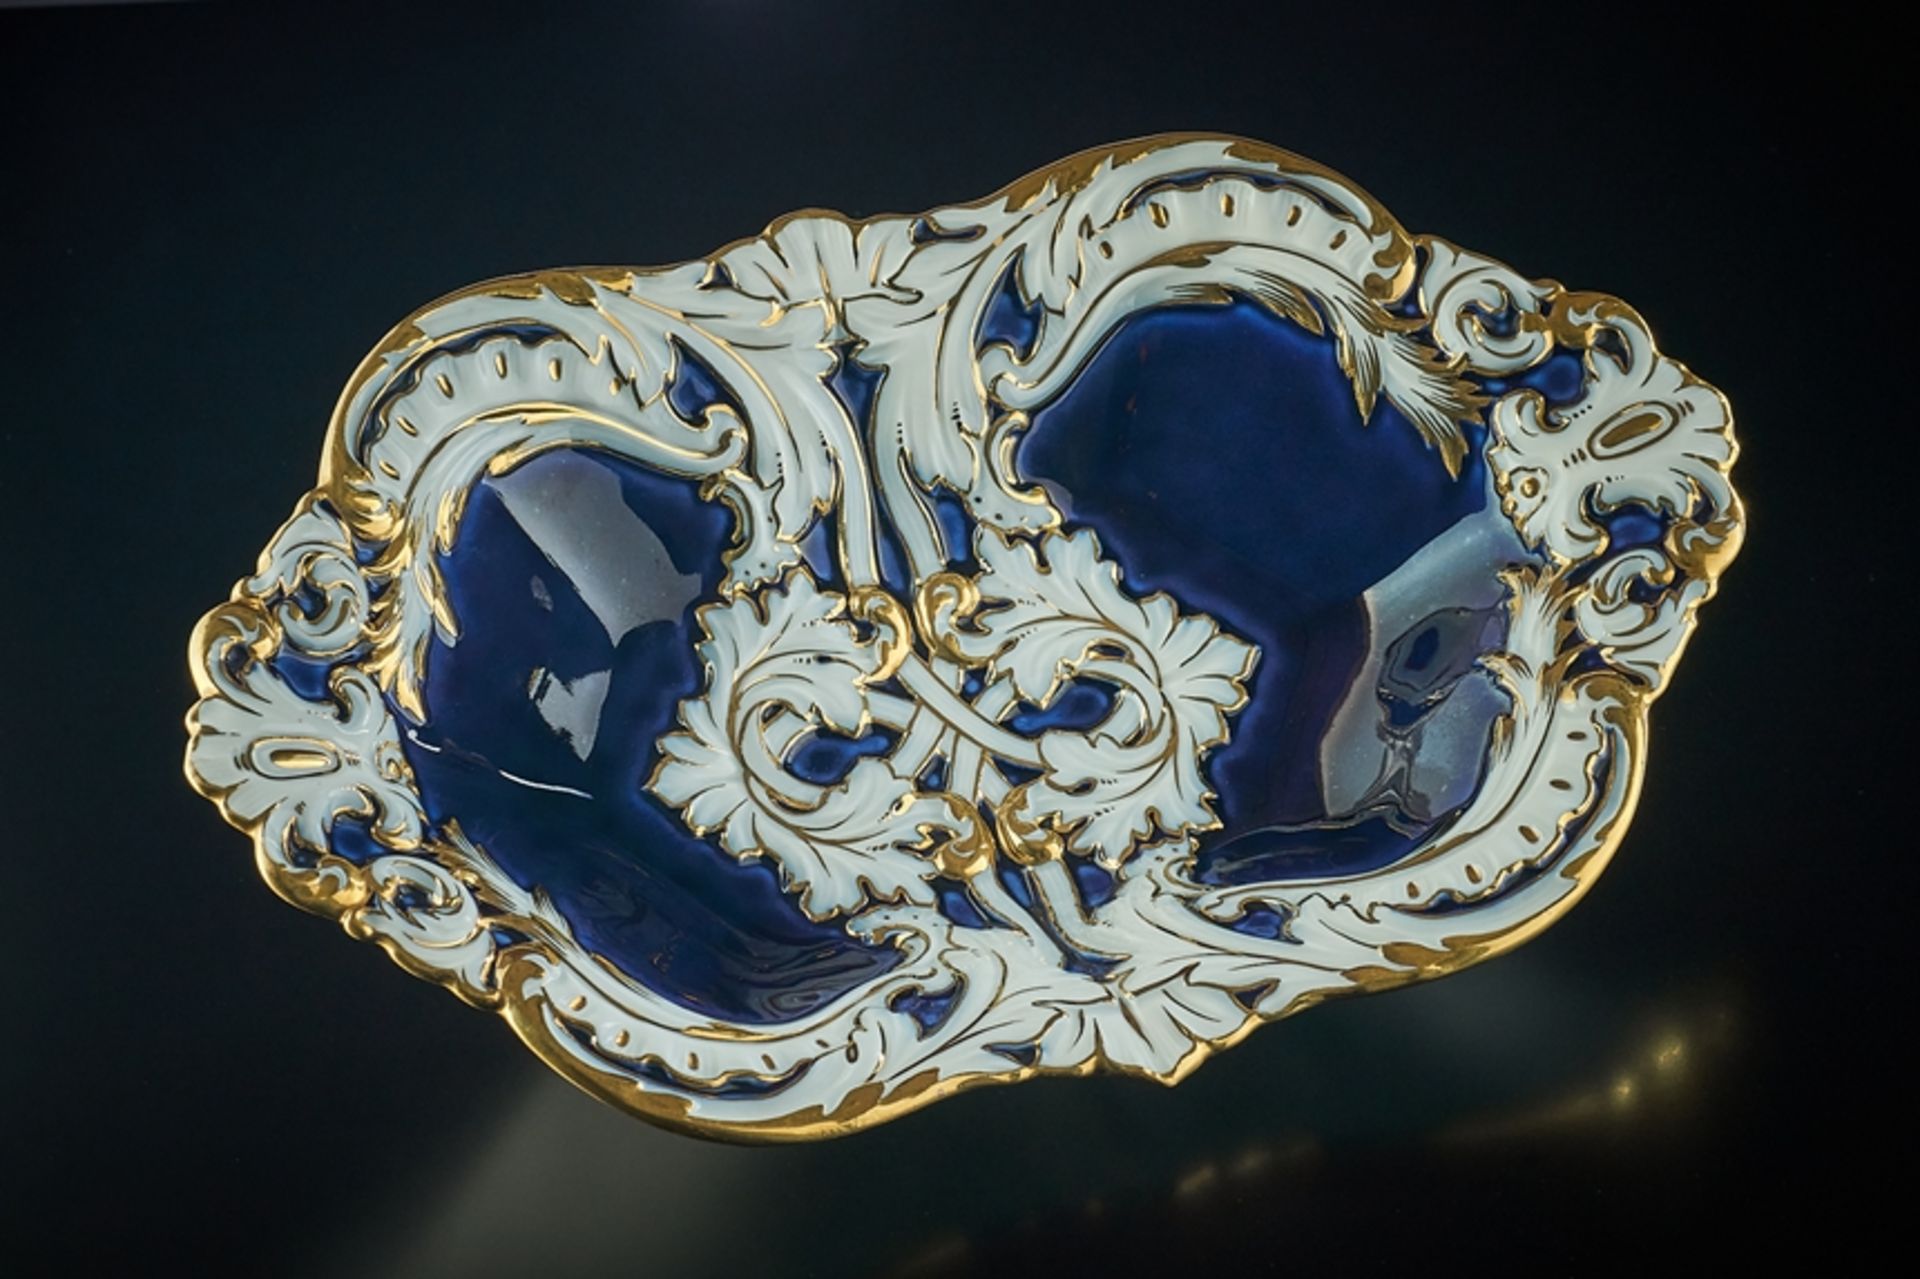 Ovale Schale mit kobaltblauem Fond. Reiche Goldstaffage, Blattwerk und Akanthus. Blaue Schwertermar